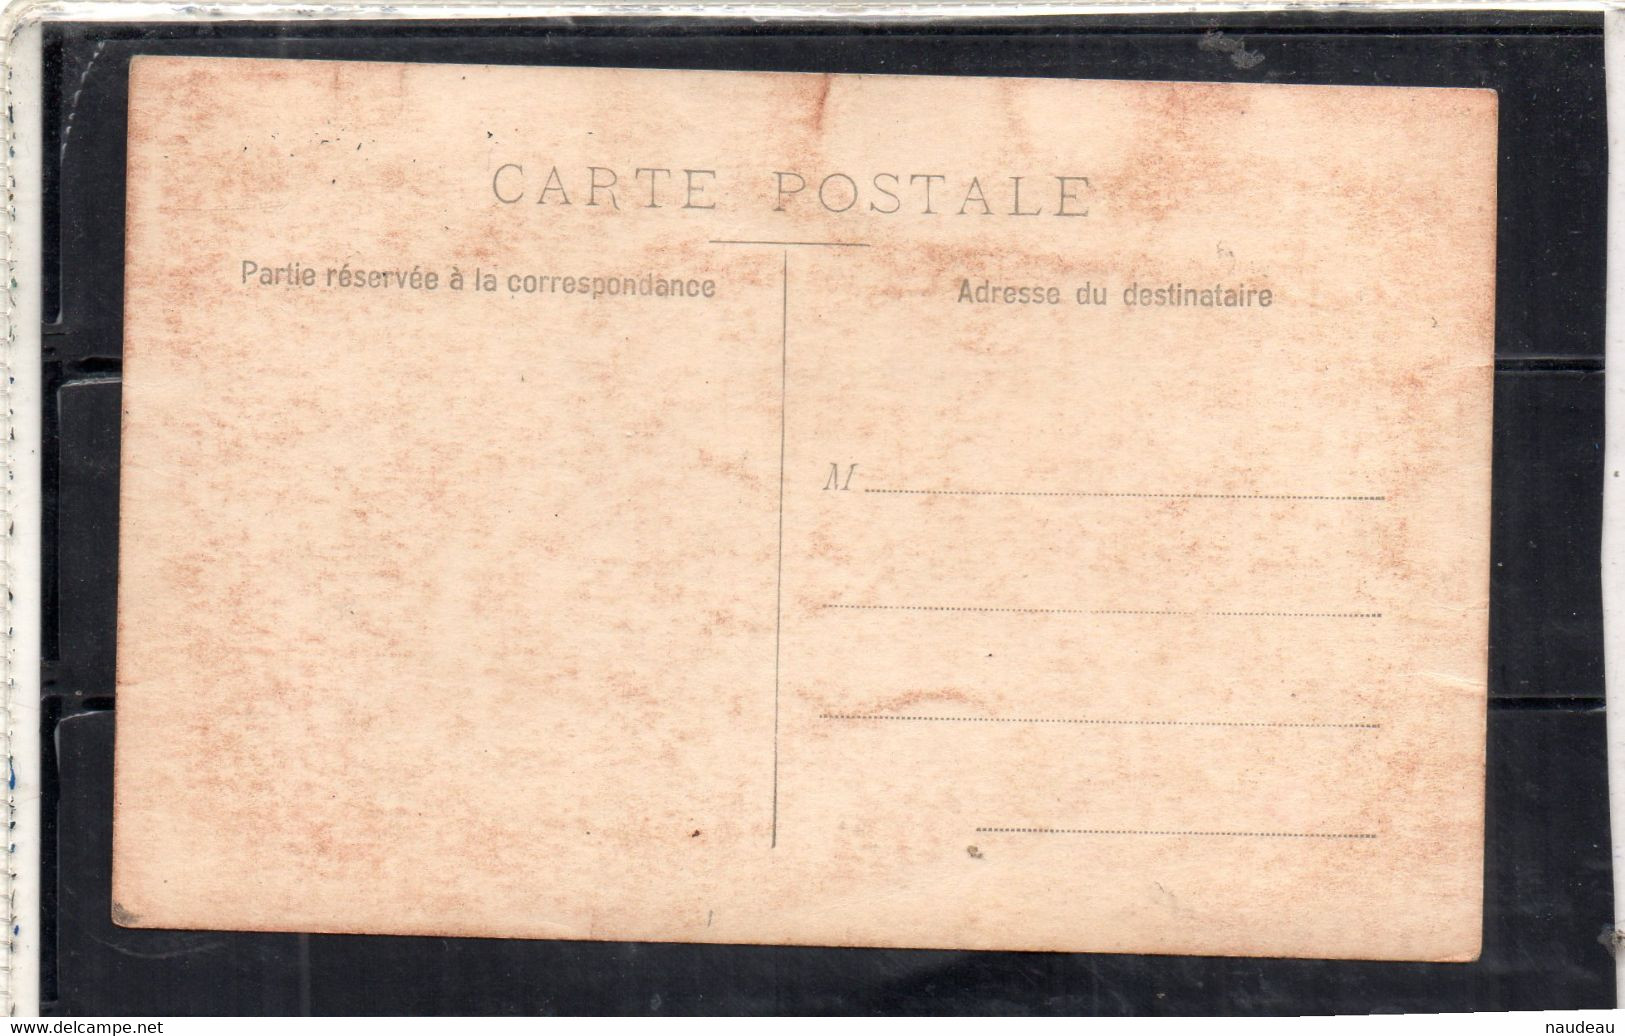 TONNELIER Carte Postale Photo Non Identifiée - Artisanat